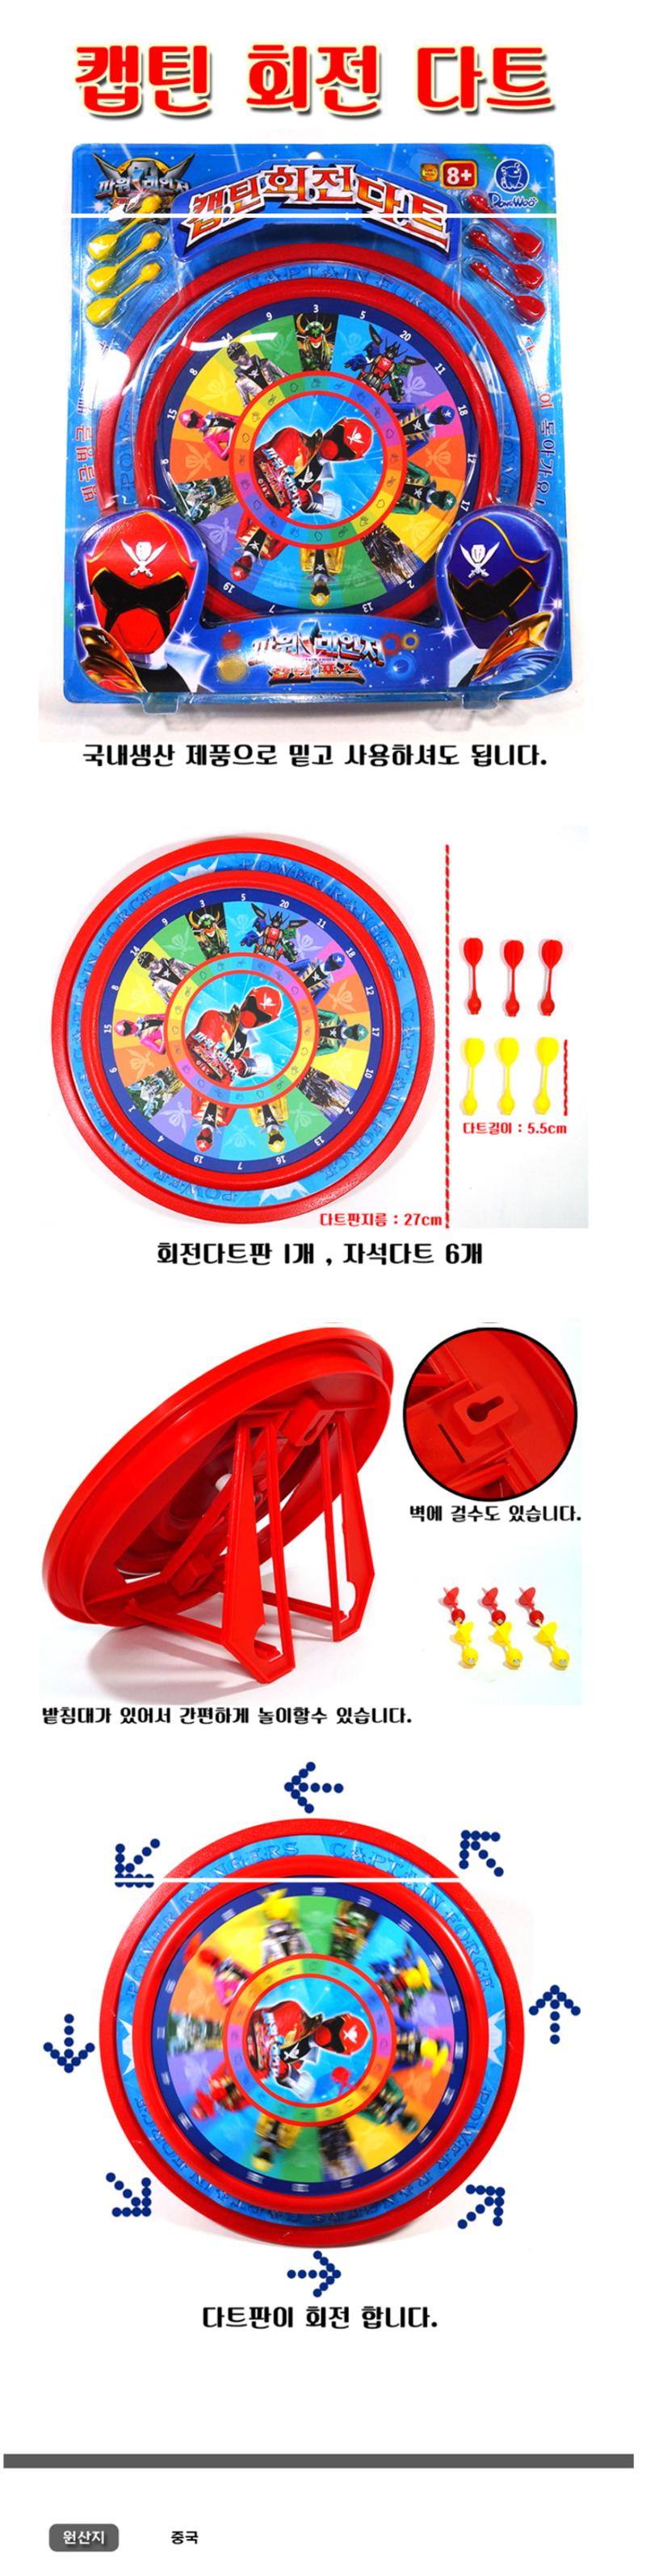 儿童飞镖玩具-旋转飞镖玩具-韩国进口正品恐龙战队 630921